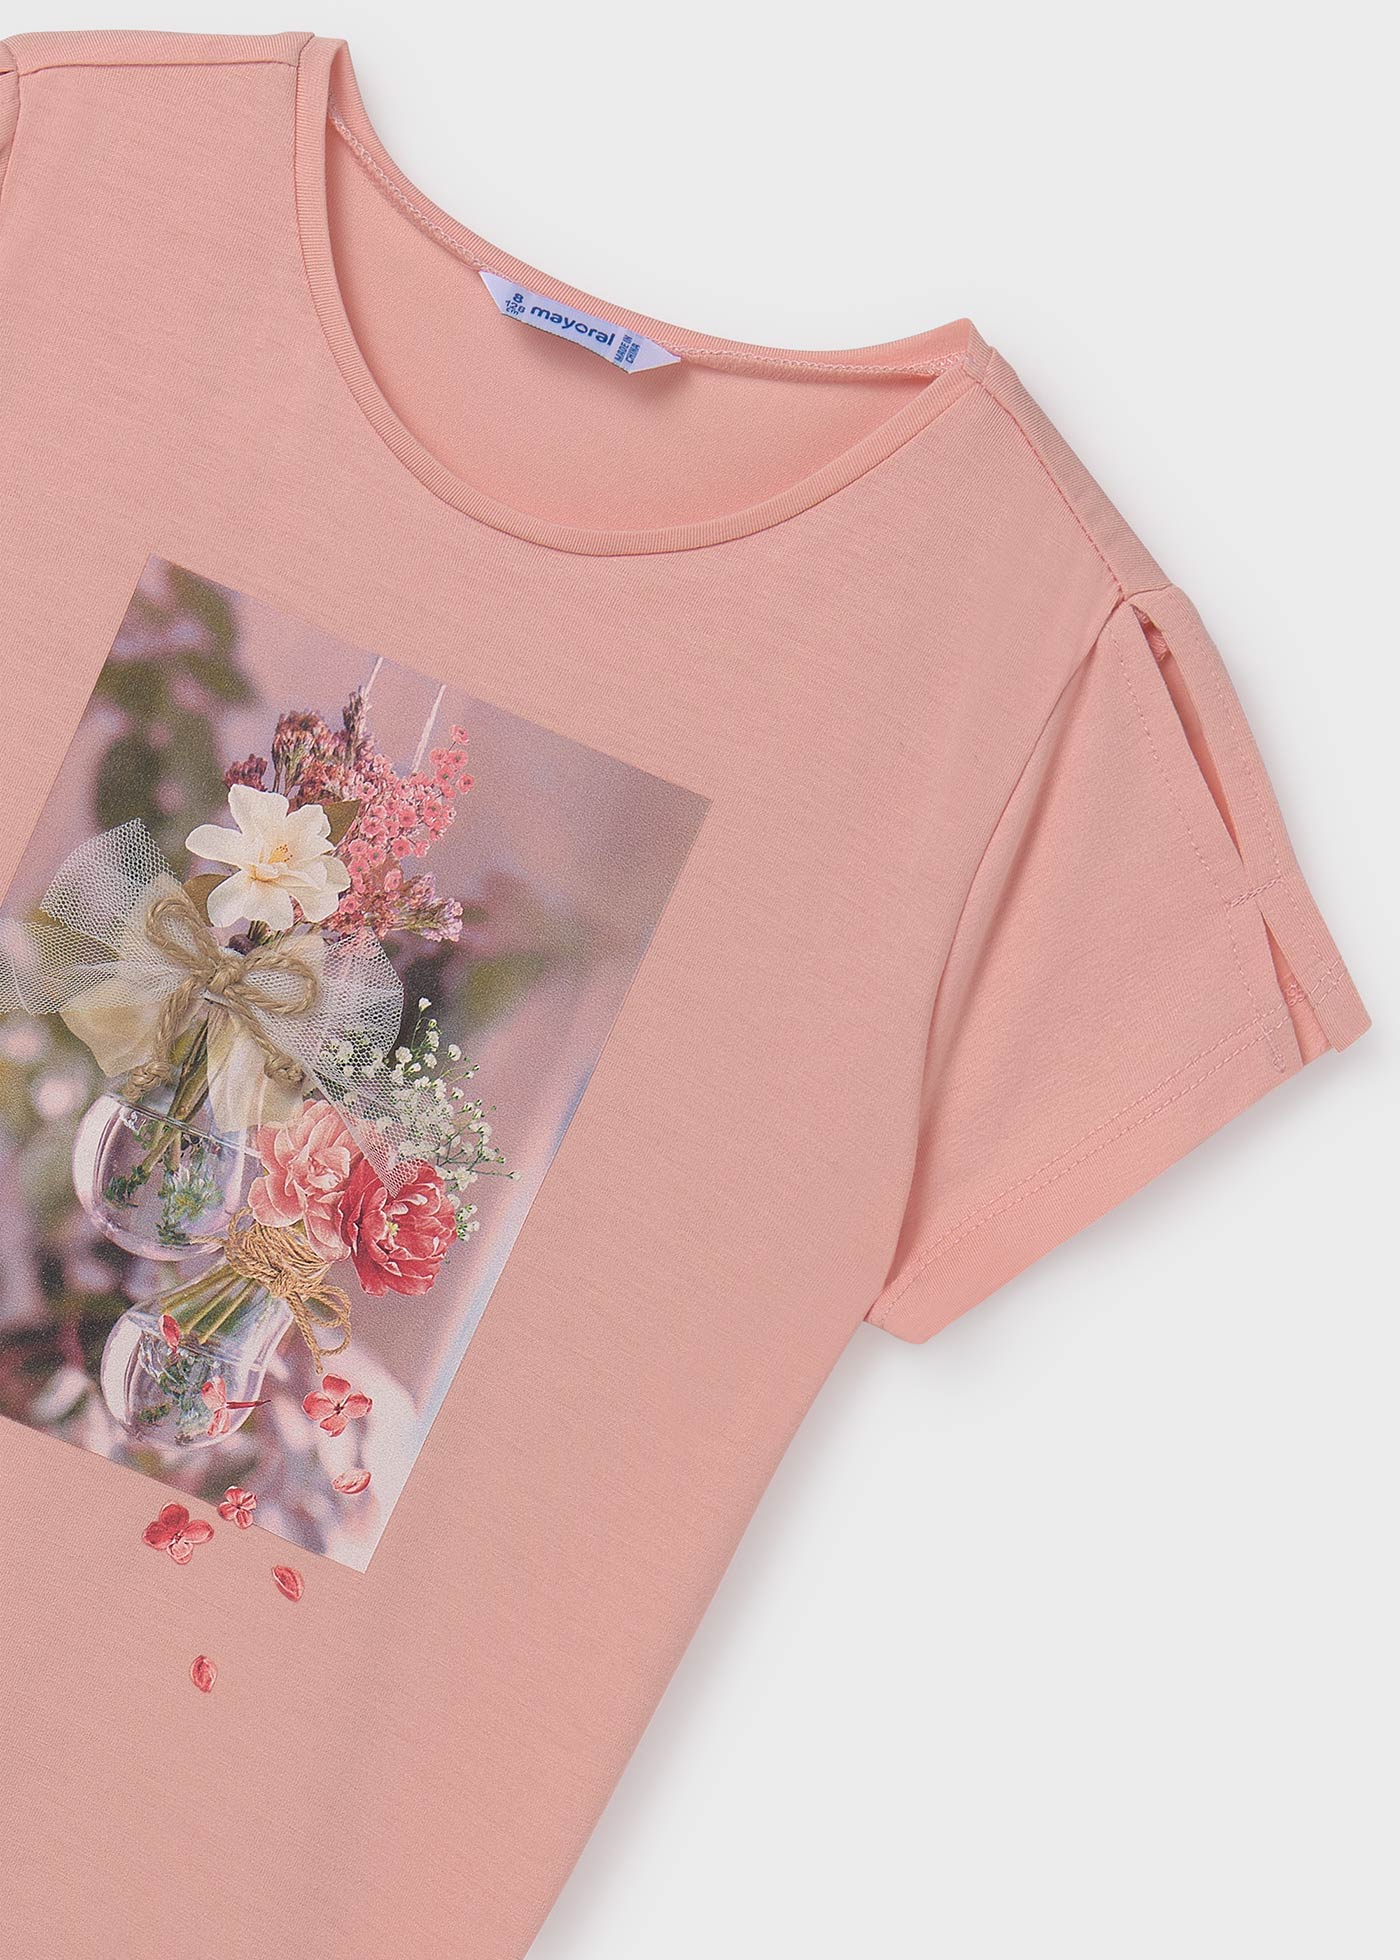 Camiseta flores chica